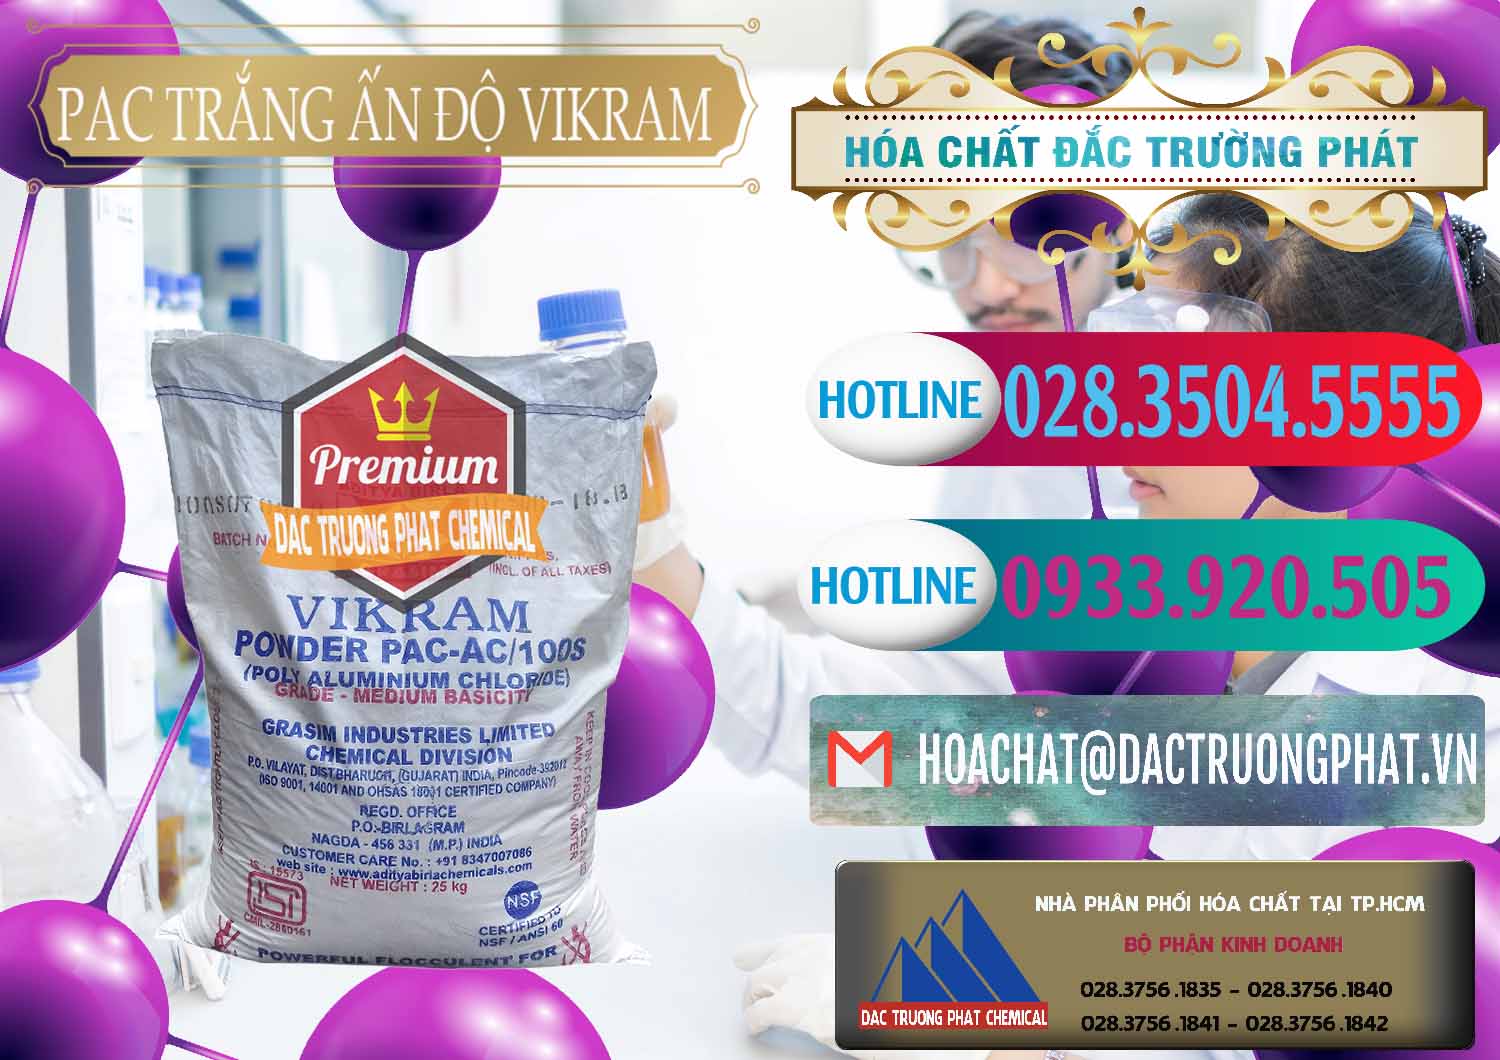 Đơn vị chuyên bán & phân phối PAC - Polyaluminium Chloride Ấn Độ India Vikram - 0120 - Cty cung cấp và phân phối hóa chất tại TP.HCM - truongphat.vn